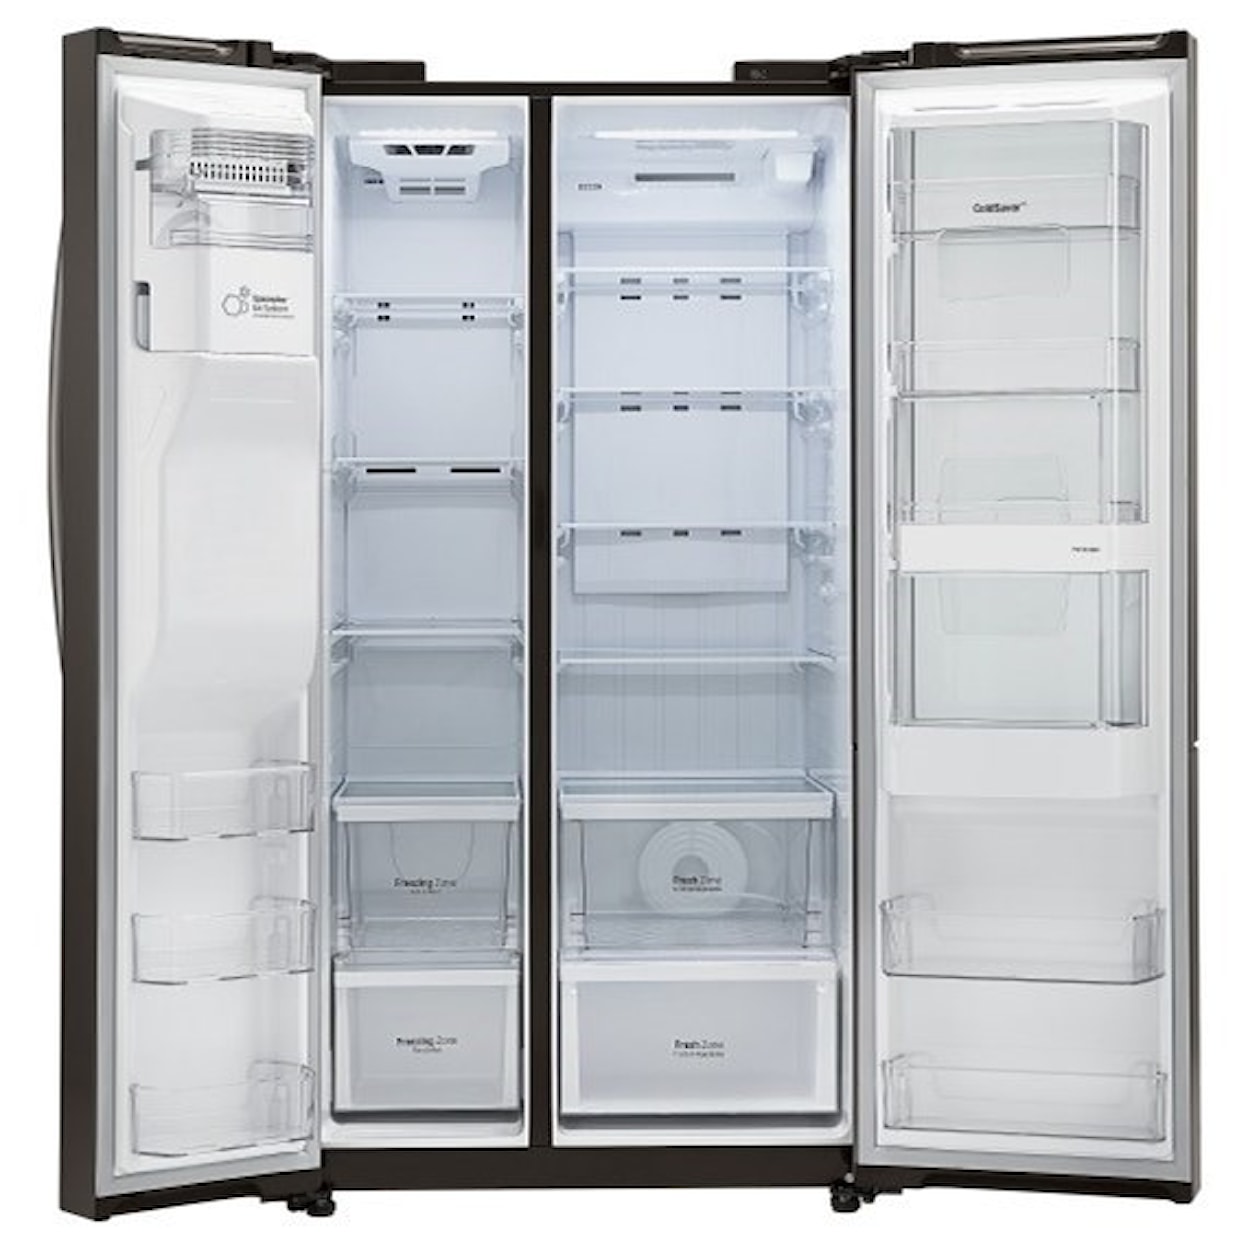 LG Appliances Side by Side Refrigerators 26 cu. ft. Side by Side 3 Door Refridgerator